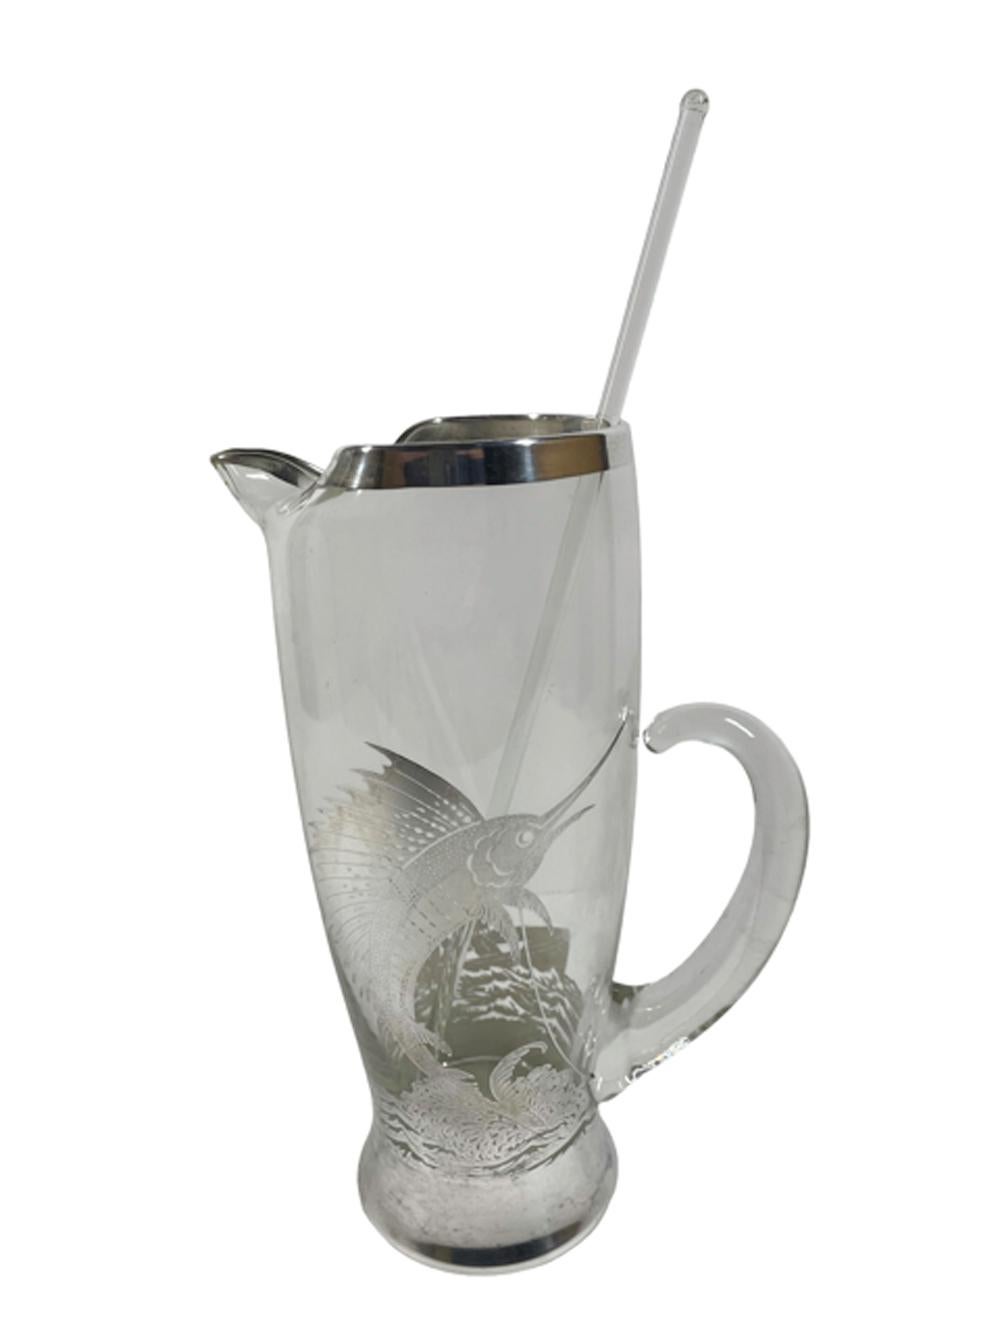 Art-Deco-Cocktailkrug mit Silberauflage, Rührstab aus Glas und 8 Bechern. Der Krug und die Becher sind alle mit Sterling-Overlay verziert, mit einem springenden Segelfisch/Marlin auf der Vorderseite und zwei Männern, die von einem Dory aus fischen,